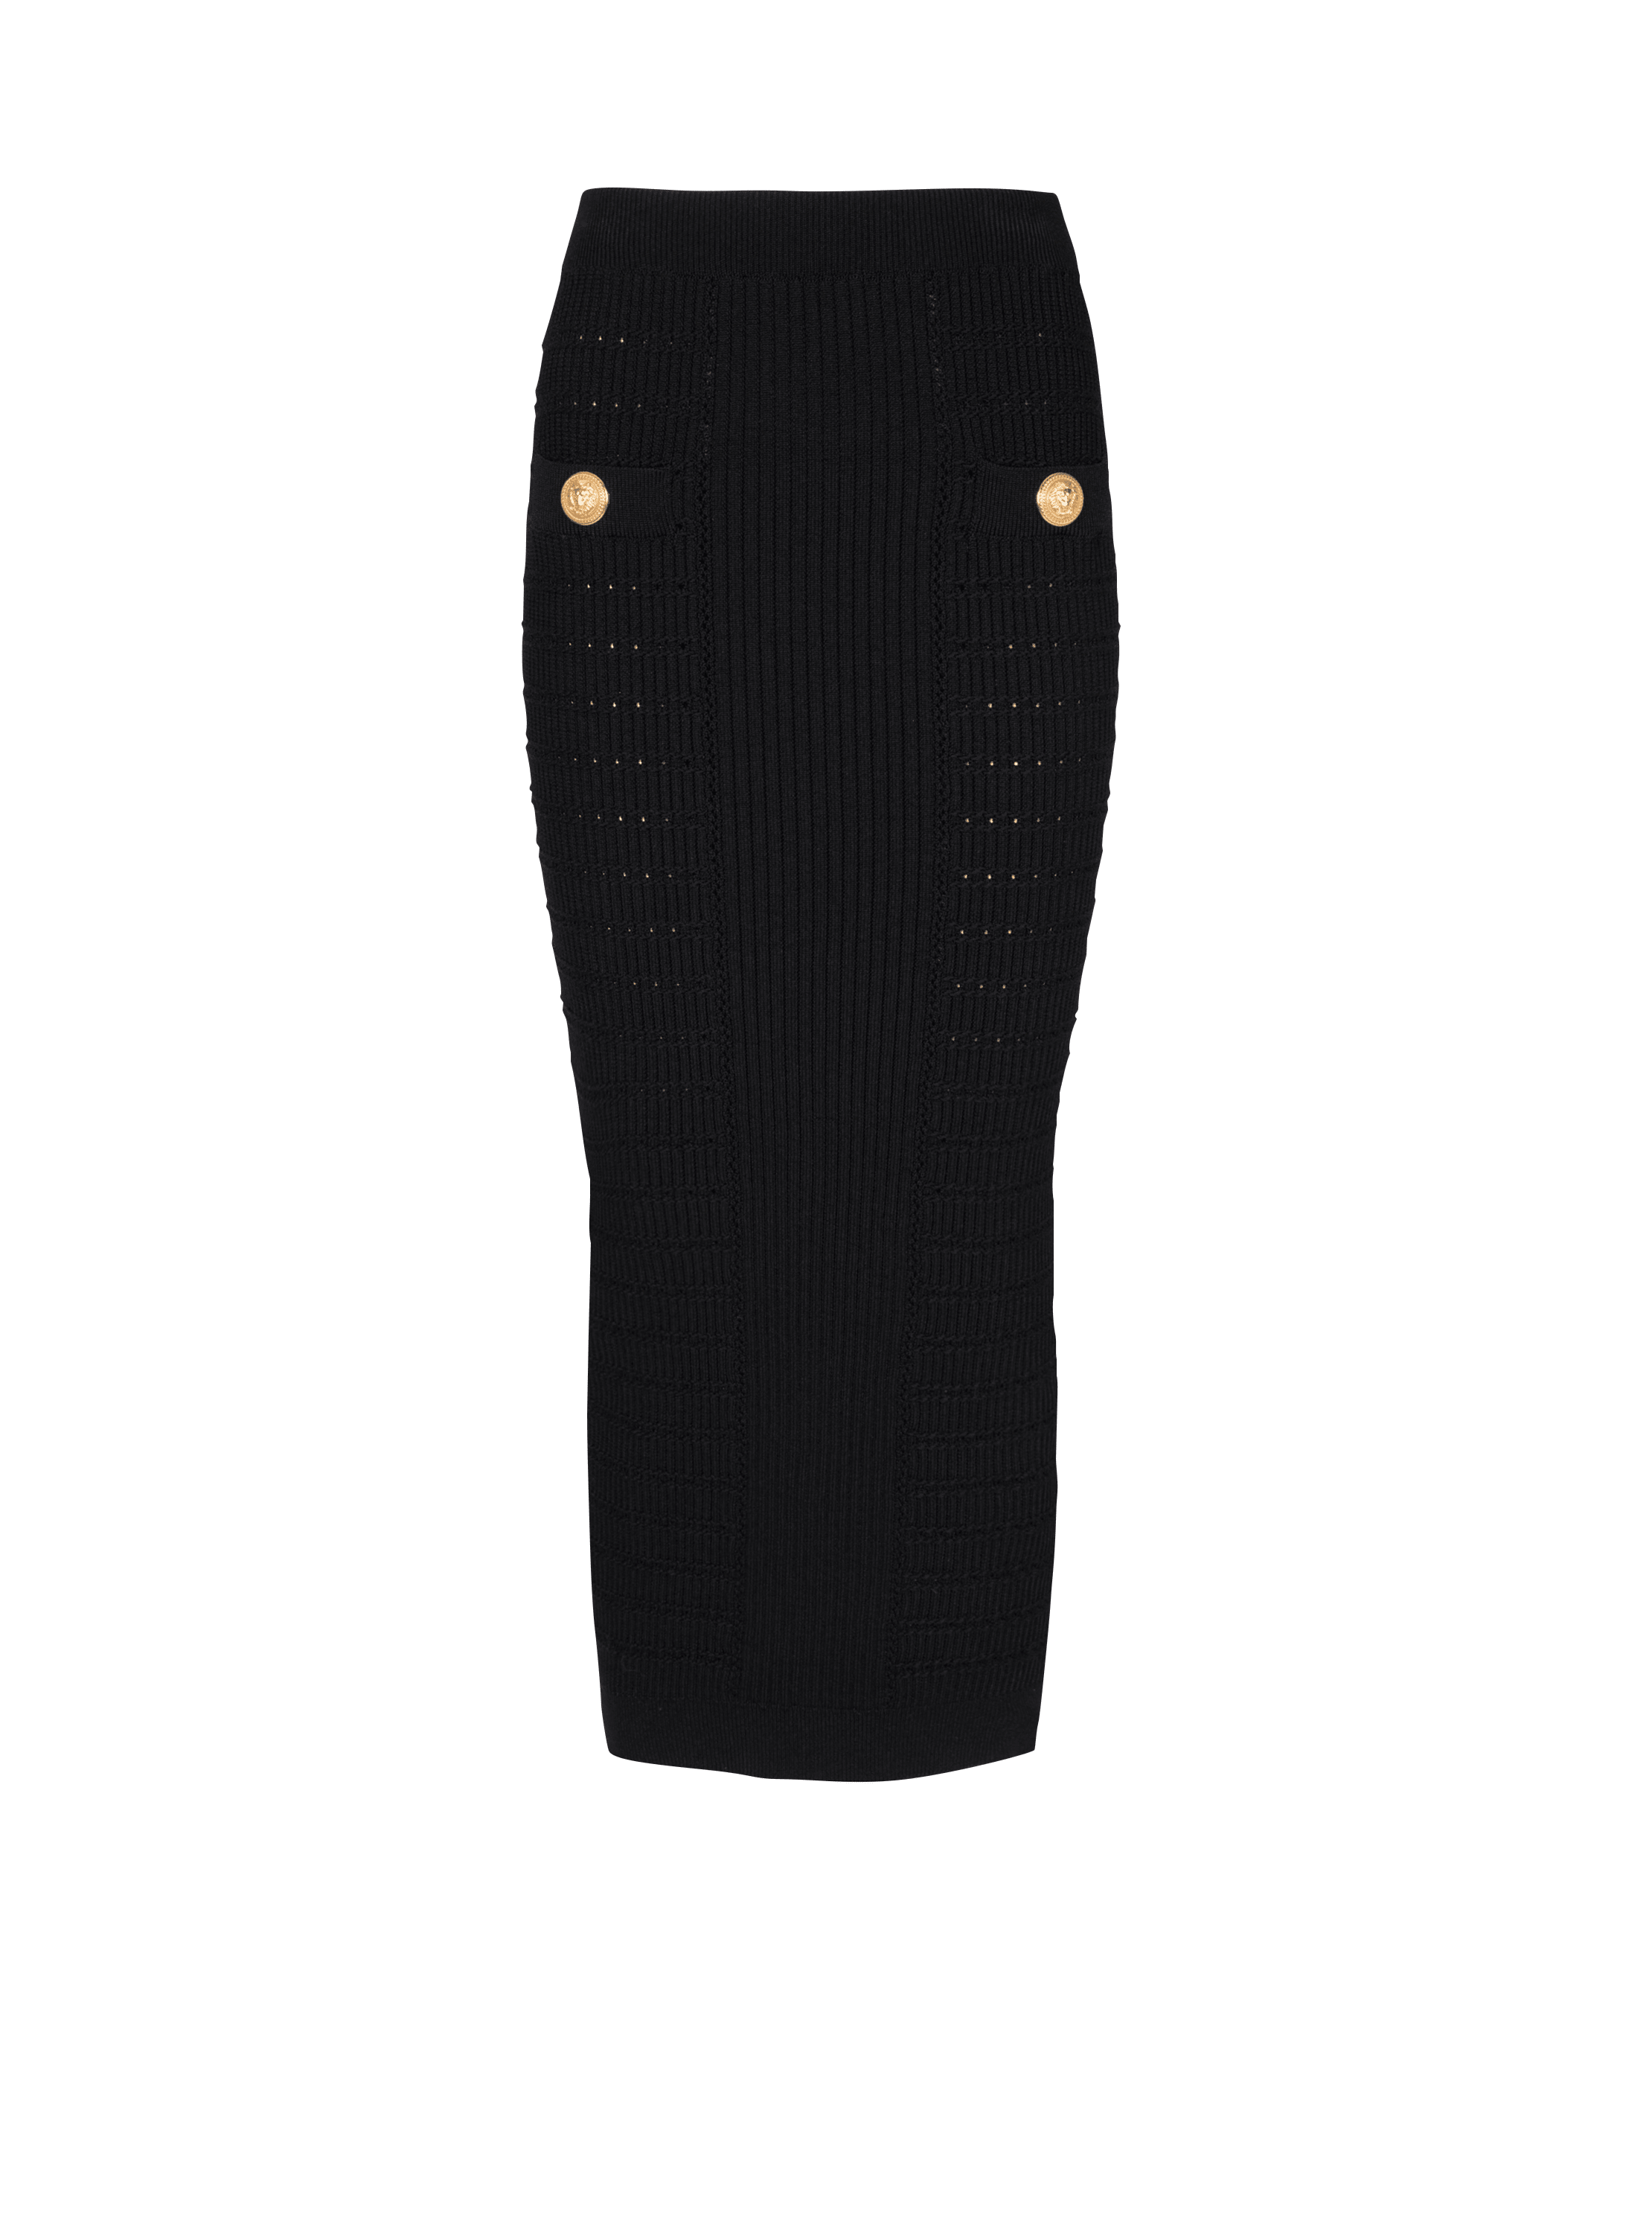 Midi knit skirt, black, hi-res